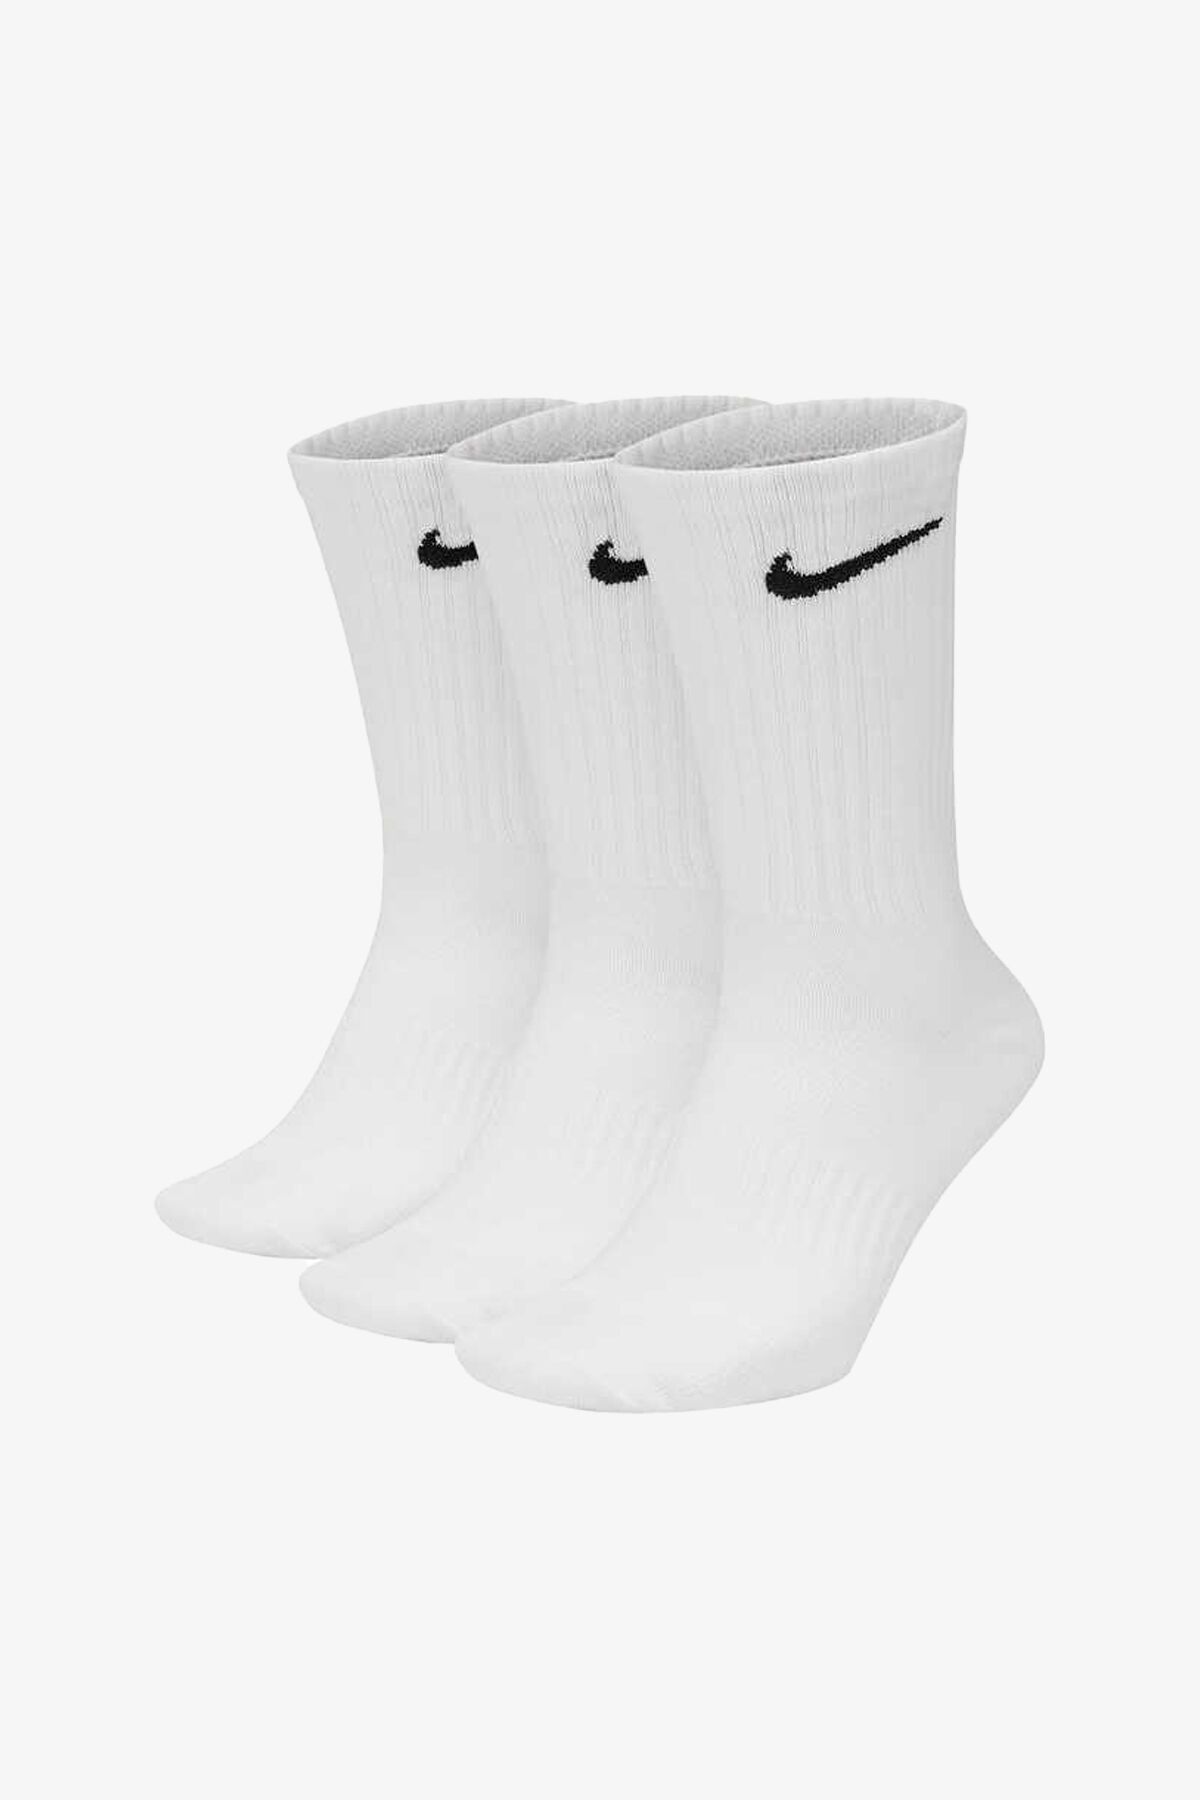 Nike Tekli Everyday Crew 3Pr Unisex Beyaz Futbol Çorabı SX7676-100 Beyaz Type1